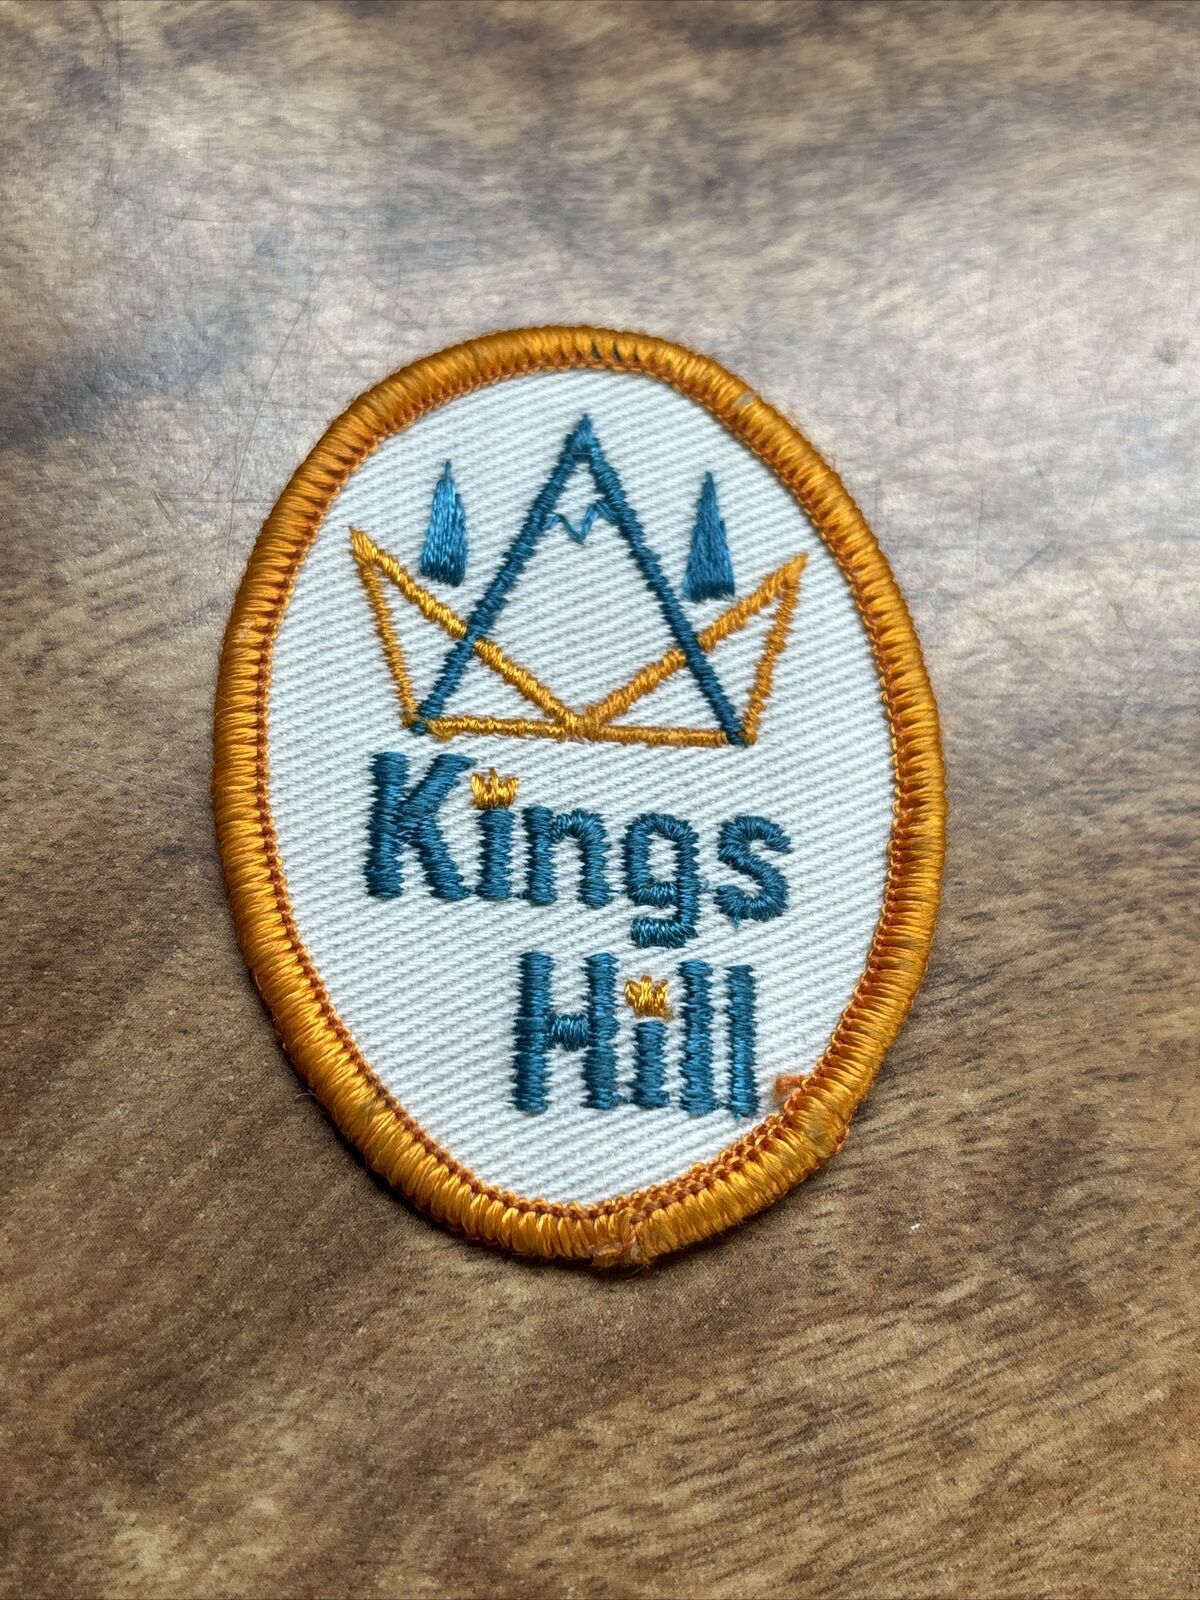 King’s Hill Patch Logo Sew On 3” Rare Lost Ski 60s 70s Vtg Showdown MT  Montana